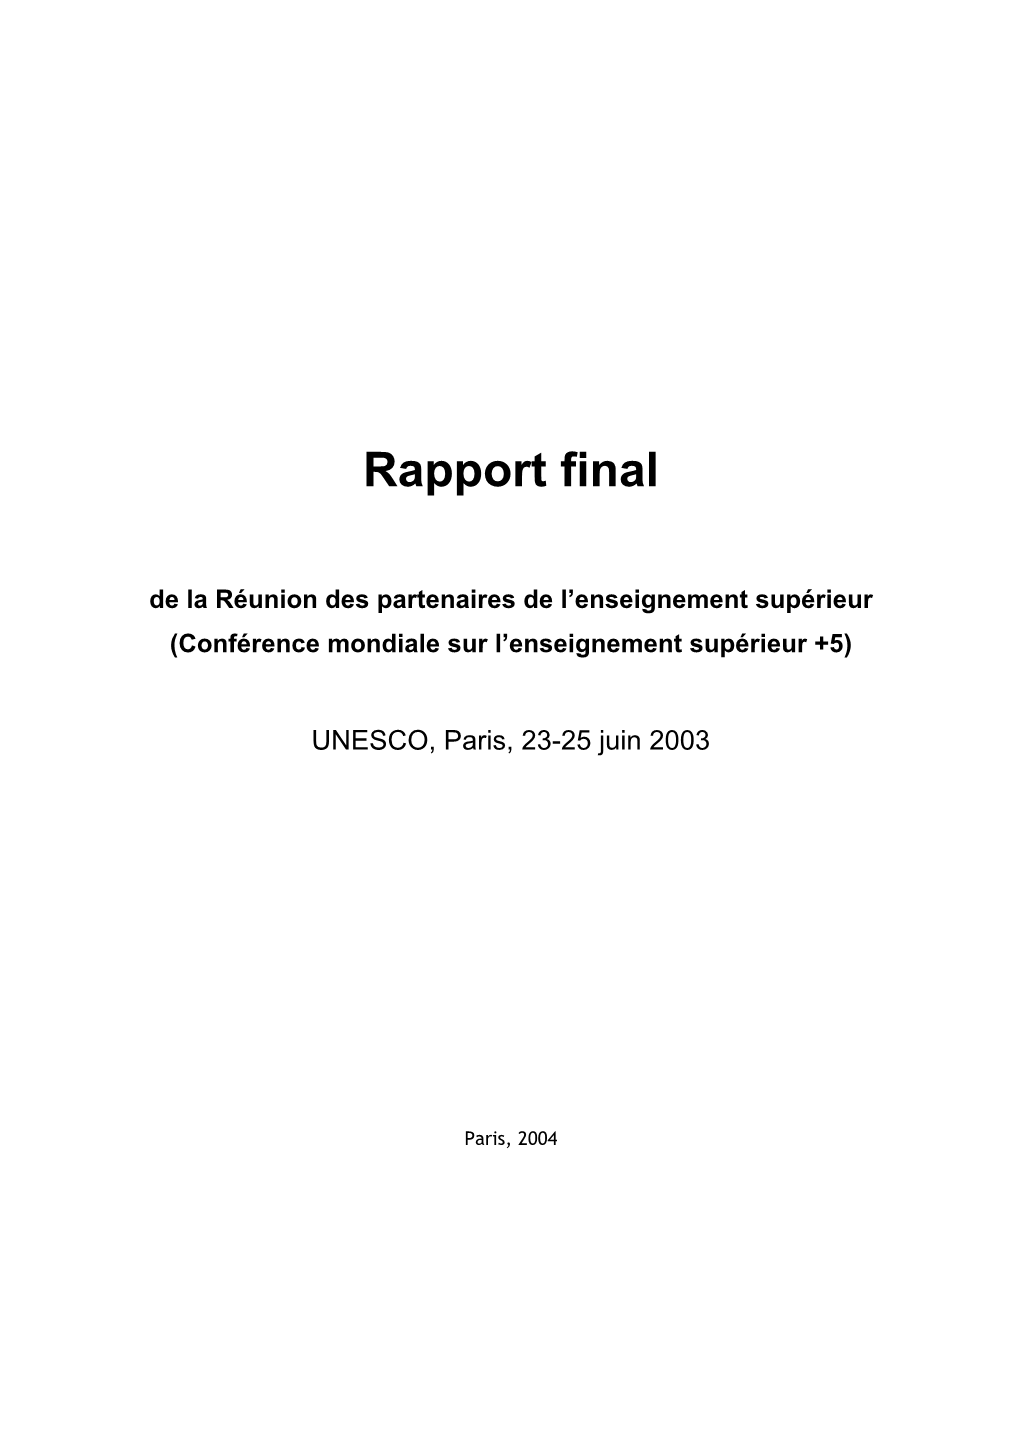 Rapport Final De La Réunion Des Partenaires De L'enseignement